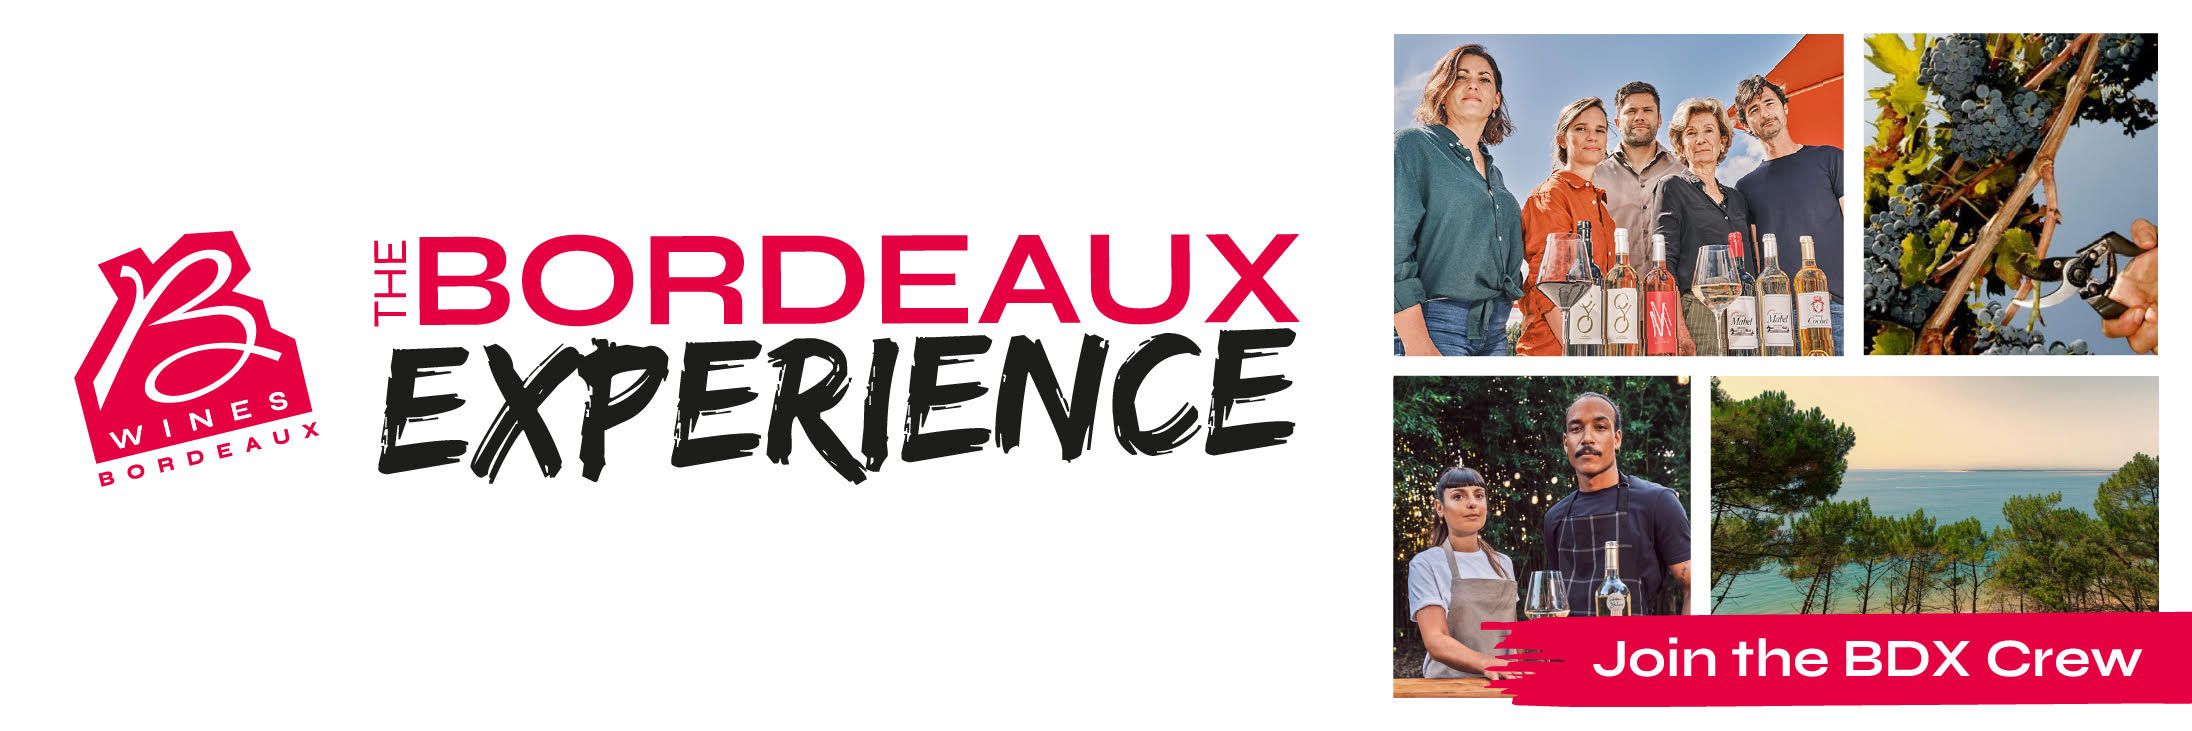 Bordeaux Experience 